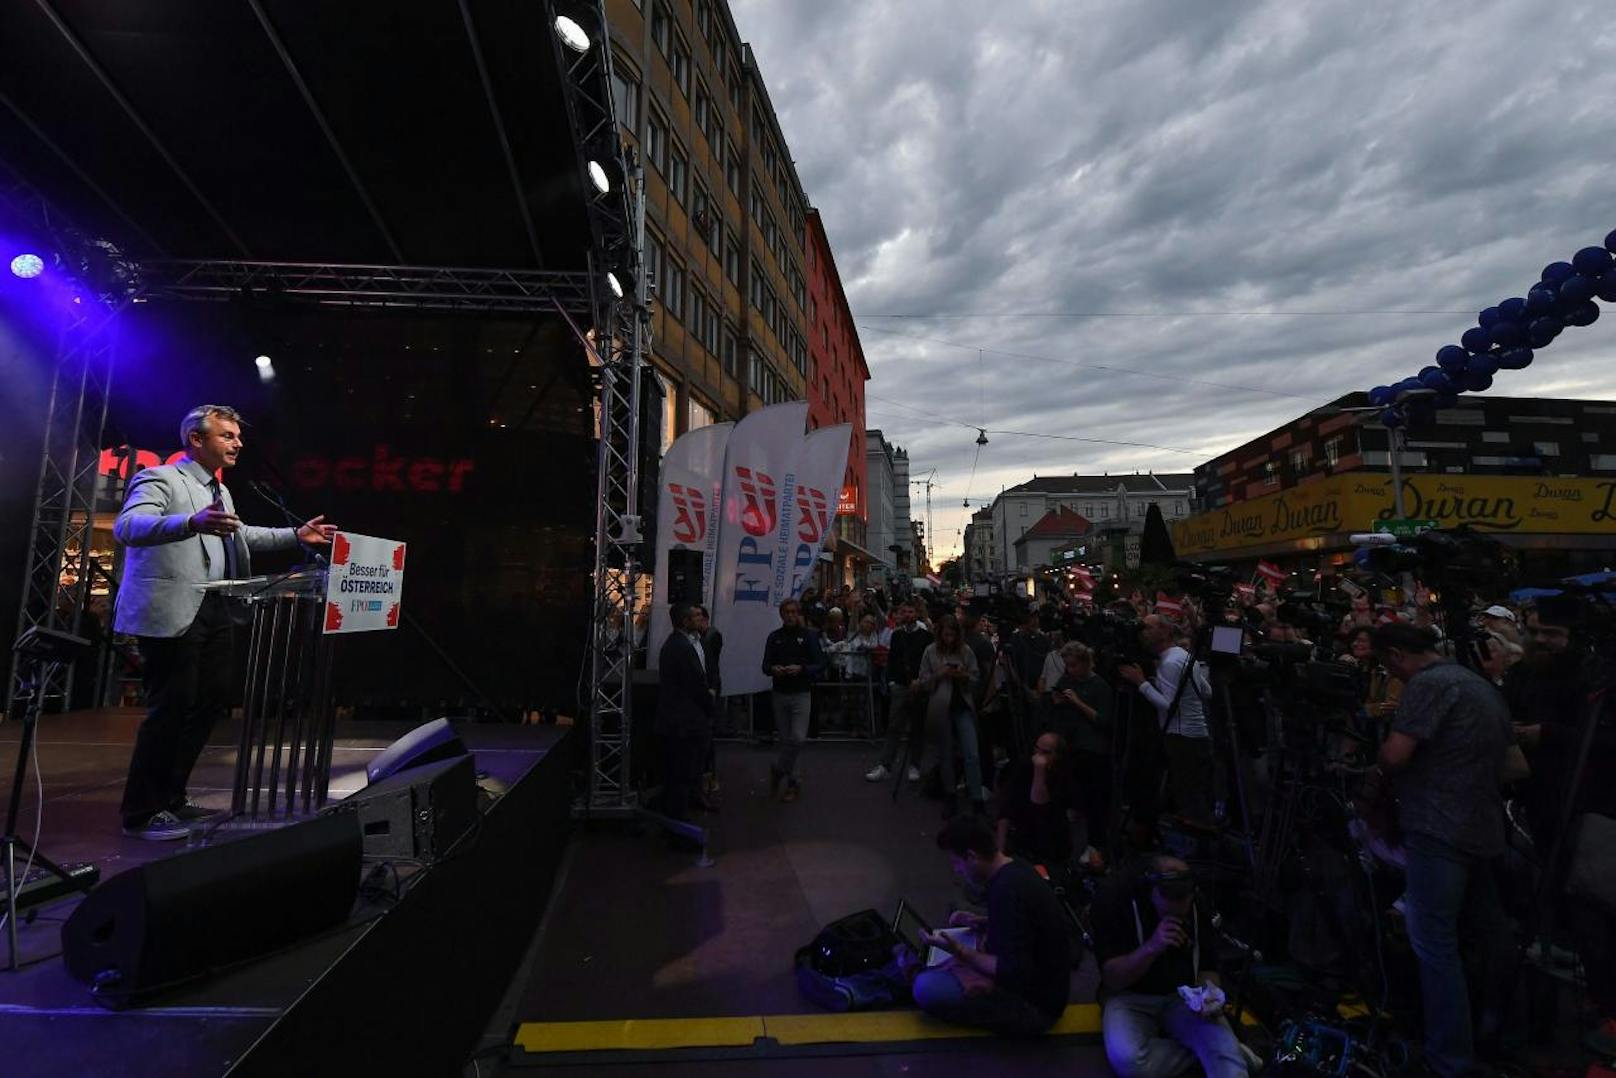 Am Viktor Adler-Markt ging der FPÖ-Wahlkampf zu Ende. Spitzenkandidat Norbert Hofer sagte gleich zu Beginn seiner Rede, dass er sich durch den Wahlkampf gekämpft habe.